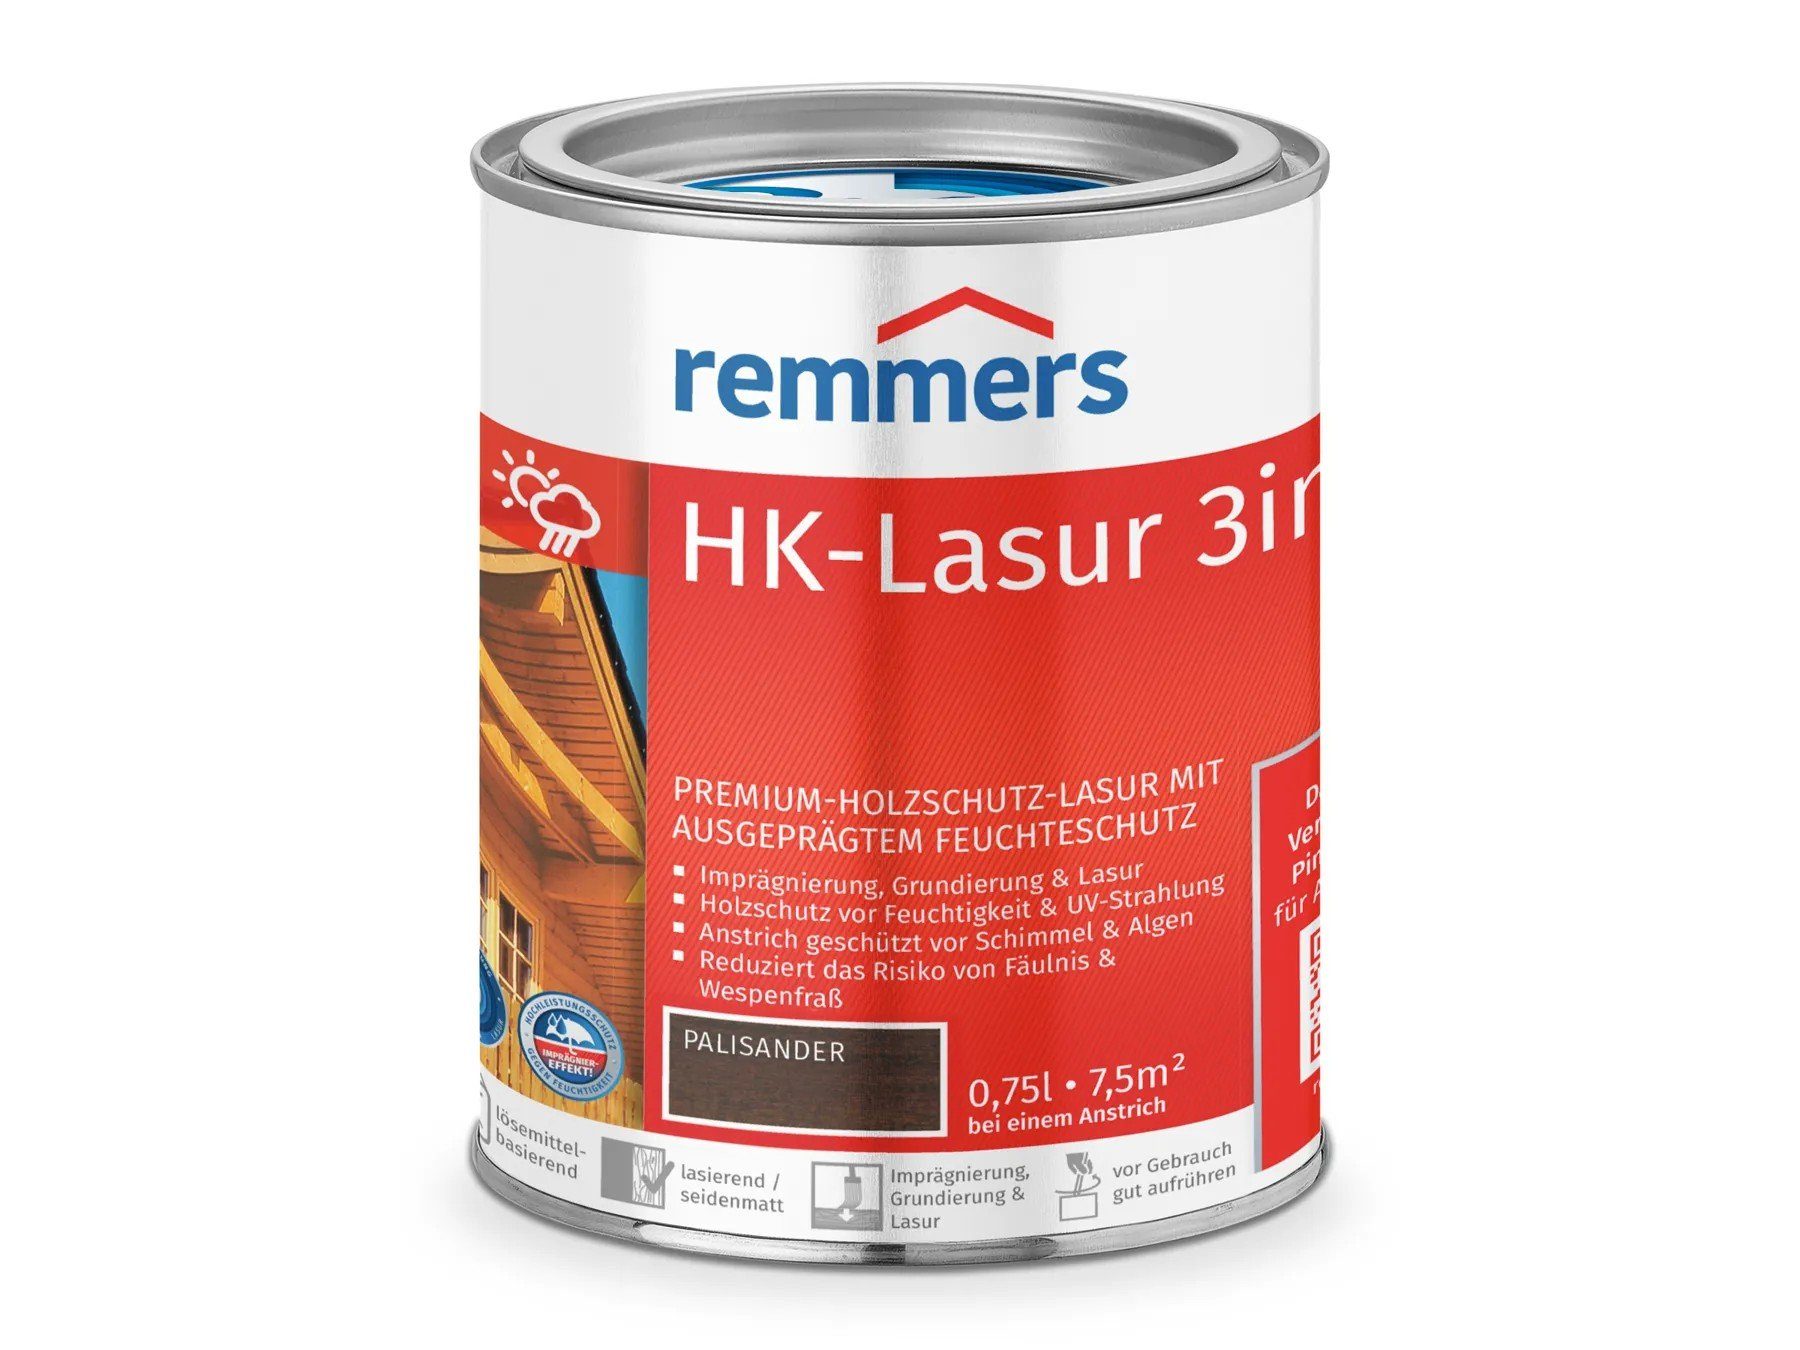 Remmers Holzschutzlasur HK-Lasur 3in1 (RC-720) palisander